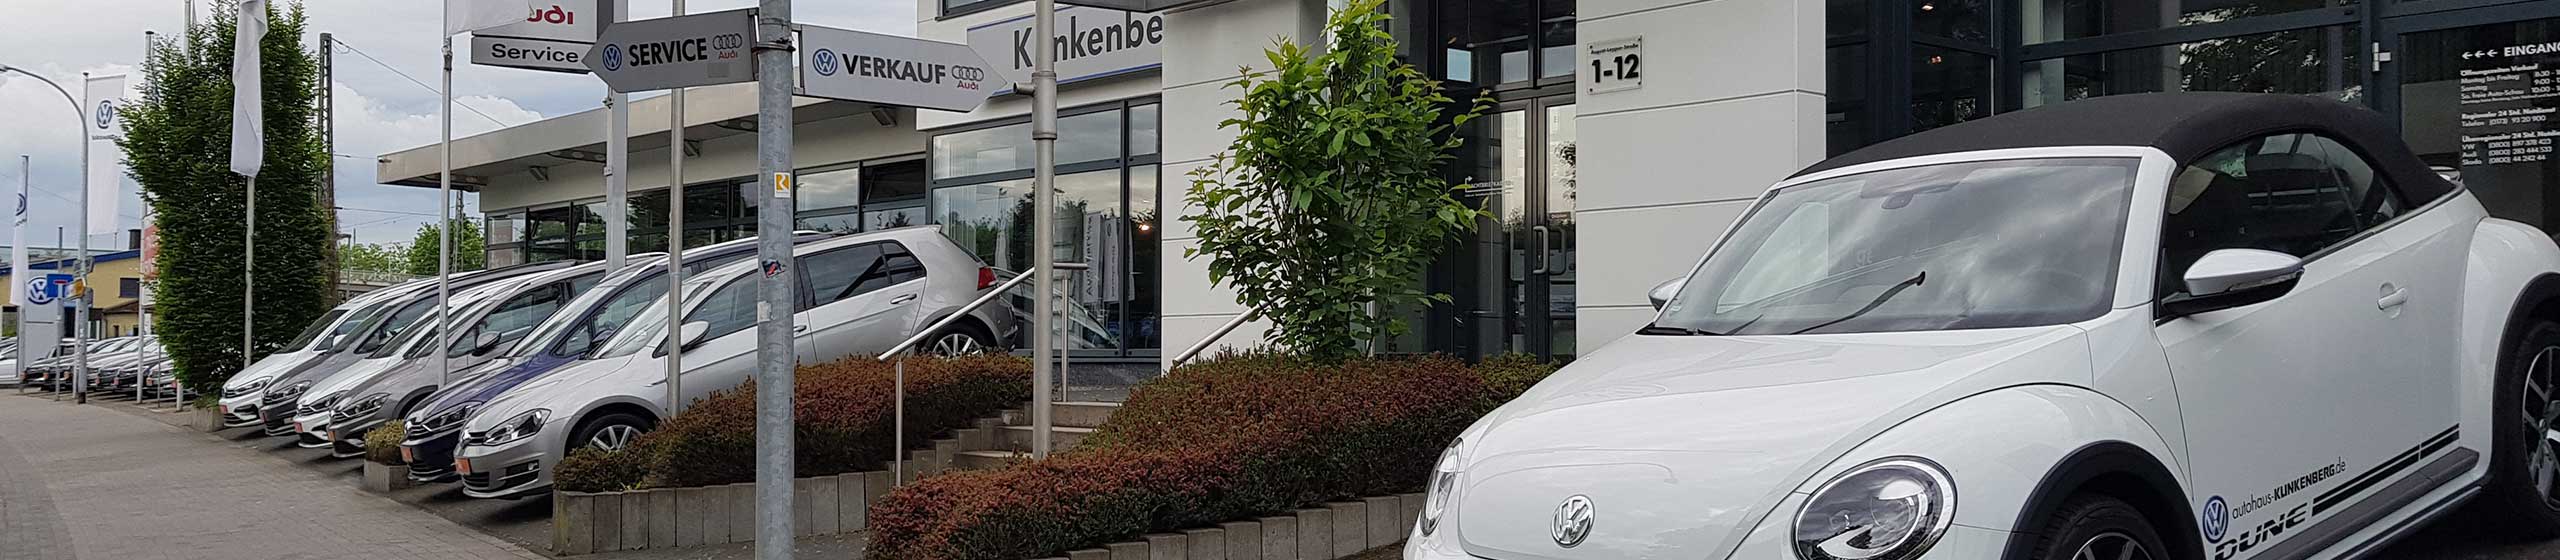 Frontansicht Autohaus Klinkenberg